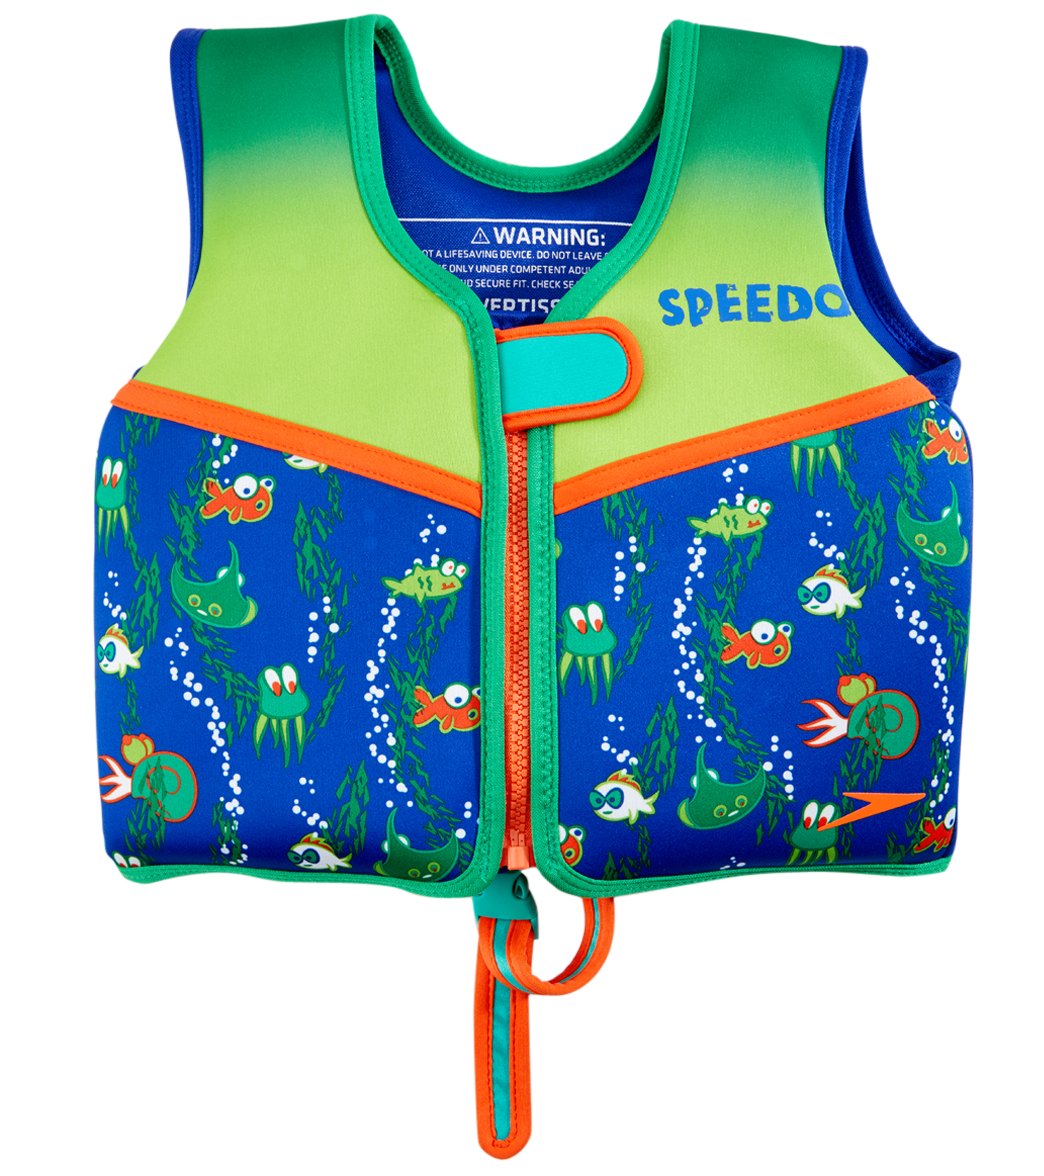 Kids Swim Vest Float Jacket AGES 1 - 4 Floral Pink GOGOKIDS | eBay